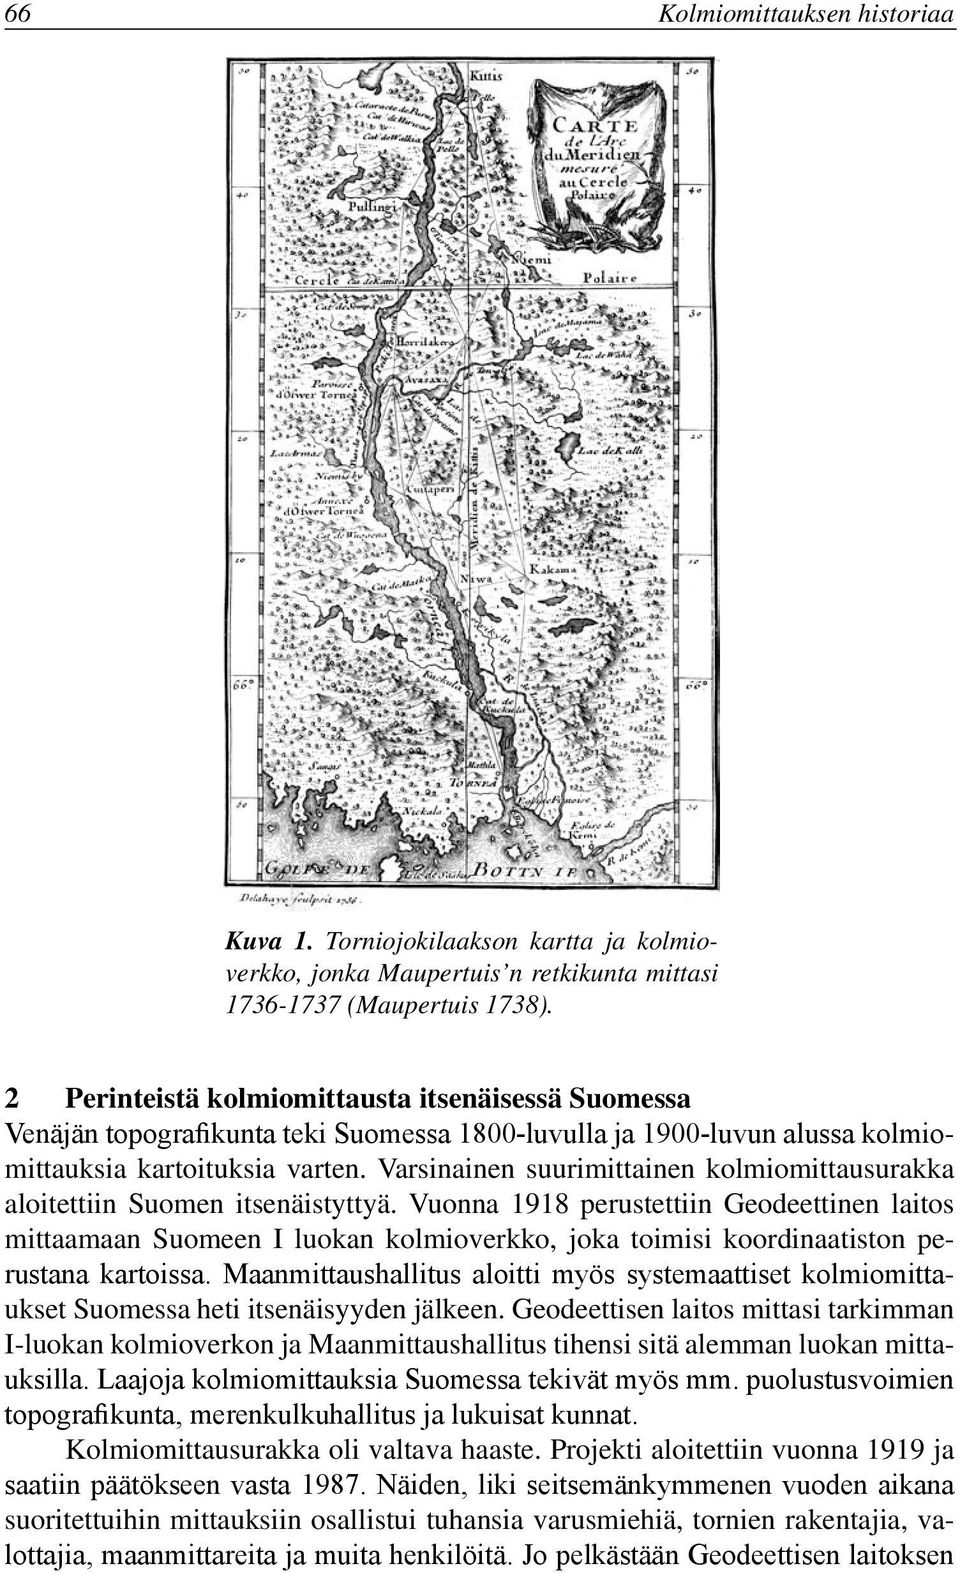 Varsinainen suurimittainen kolmiomittausurakka aloitettiin Suomen itsenäistyttyä.